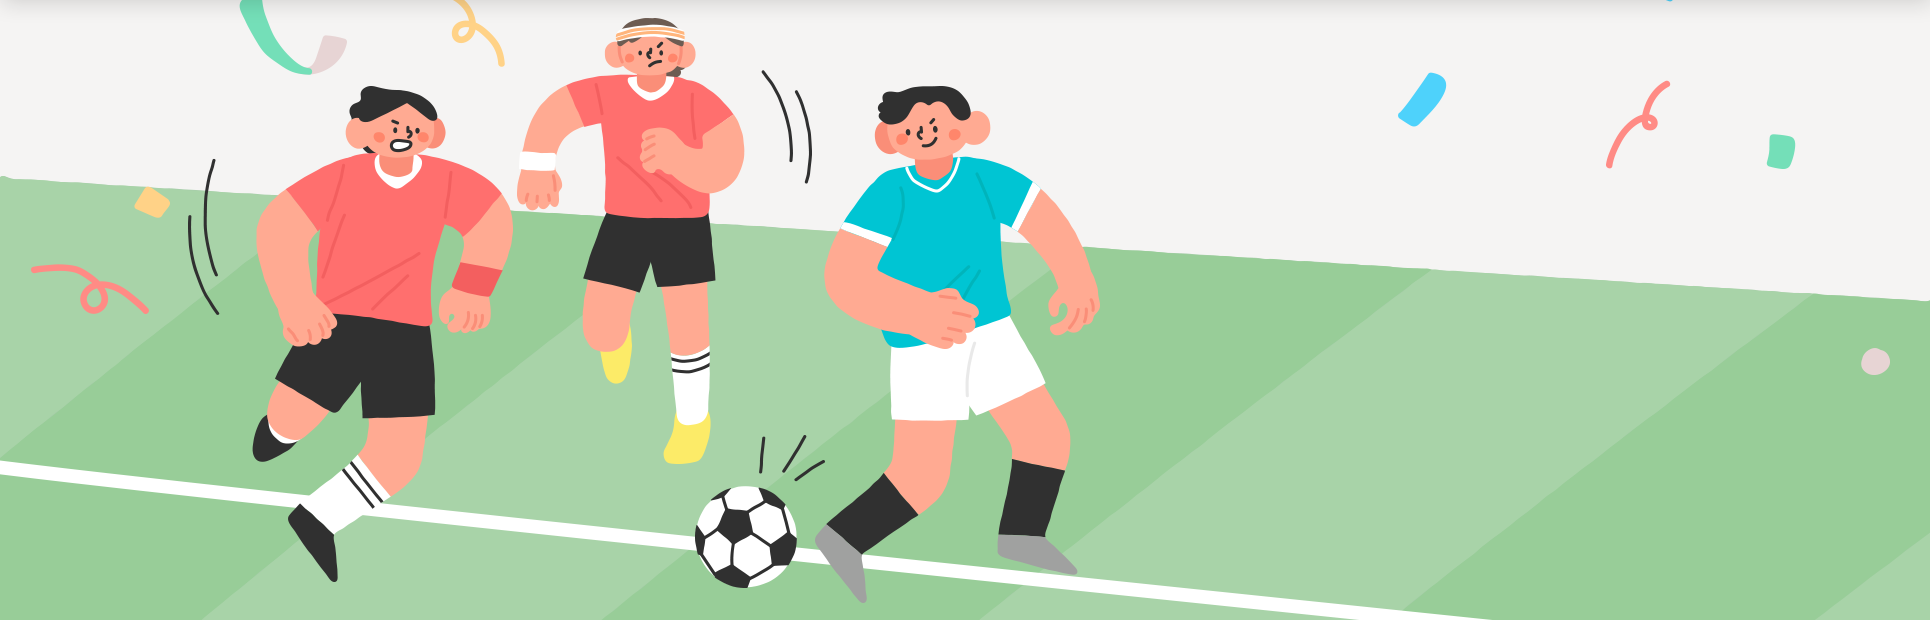 축구 경기장에서 경기하고 있는 사람들의 그림이 그려져 있다. 하늘색 유니폼을 입은 남자가 축구공을 몰고 있으며, 중앙에 있는 여자 선수와 왼쪽에 있는 남자 선수가 그를 쫓고 있다.